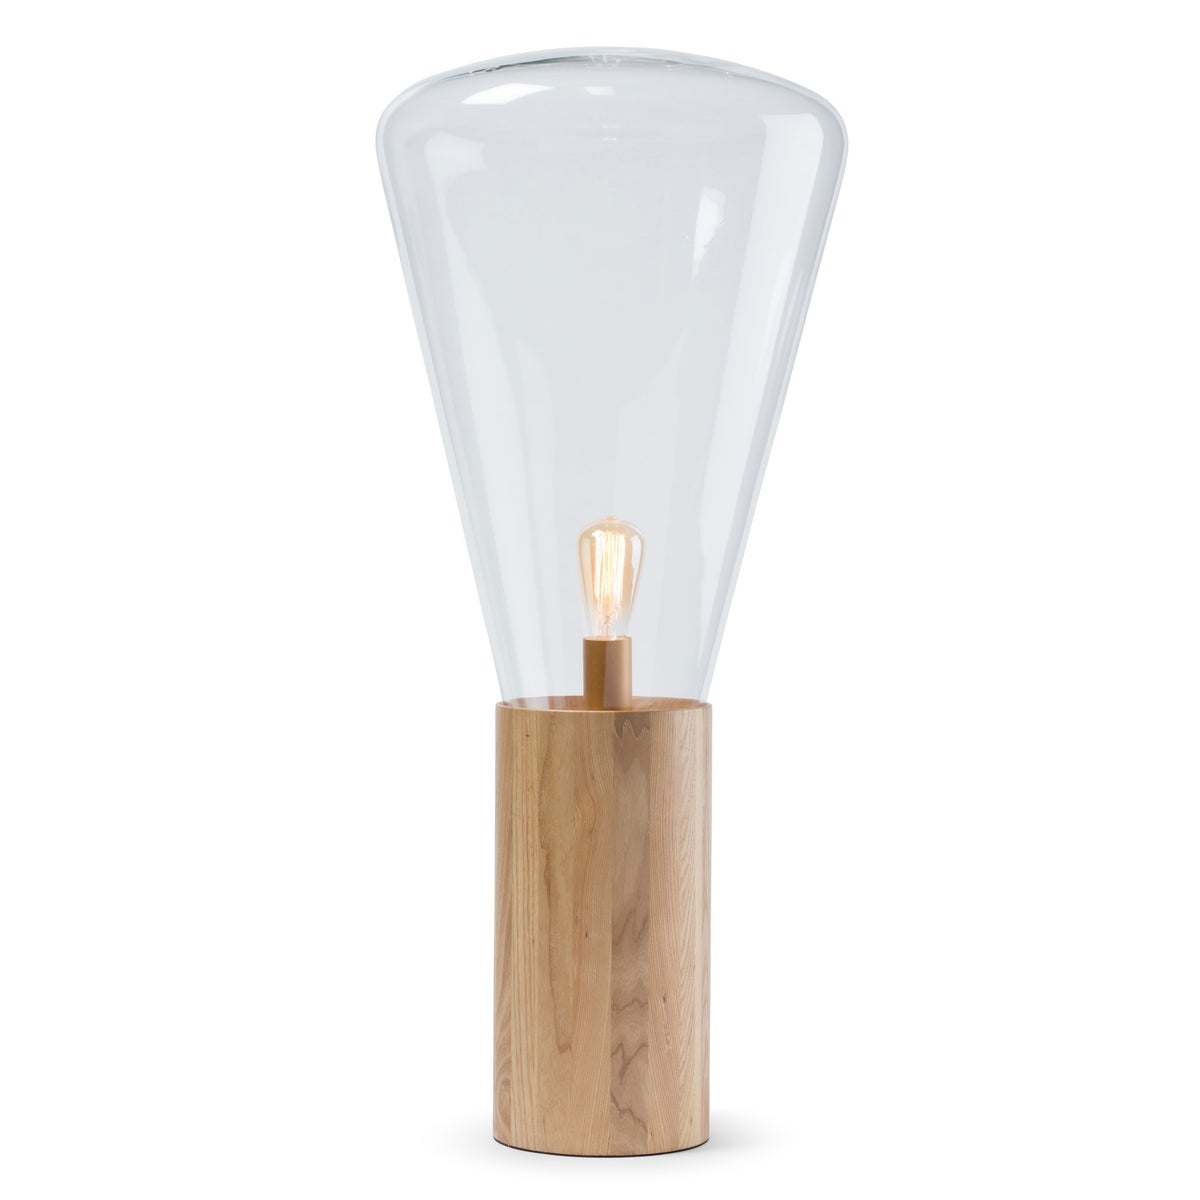 Yoko Lamp - (Large) - Natural Wood, Clear Glass